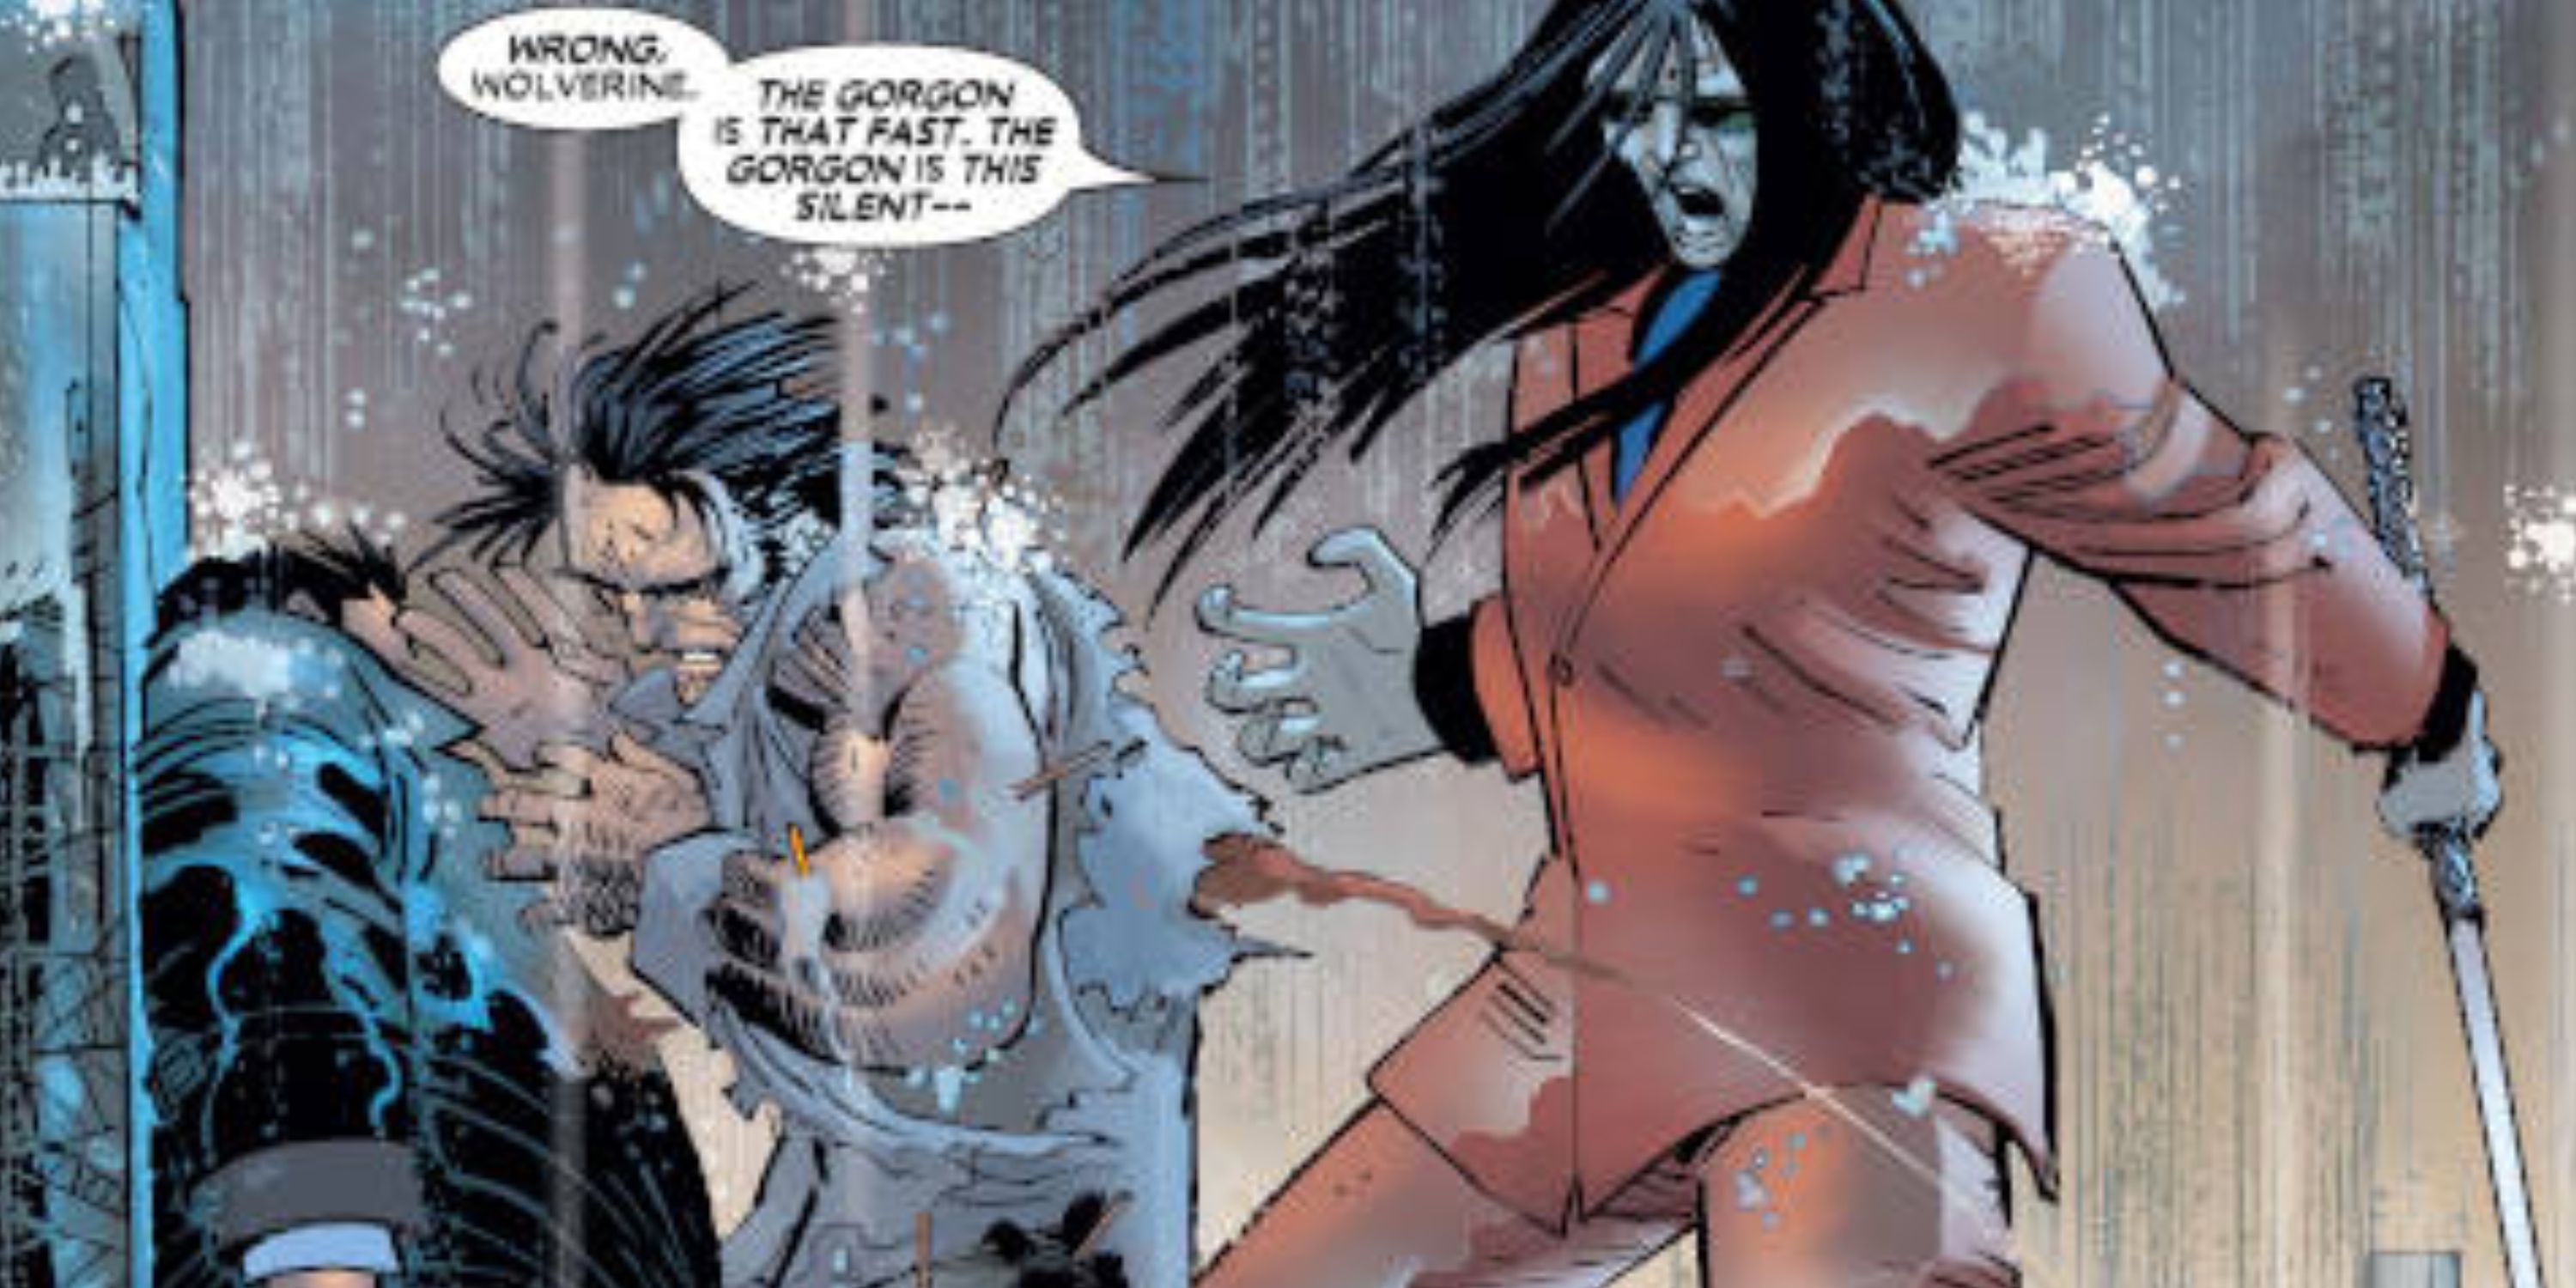 Górgona matando Wolverine em Inimigo do Estado da Marvel Comics.